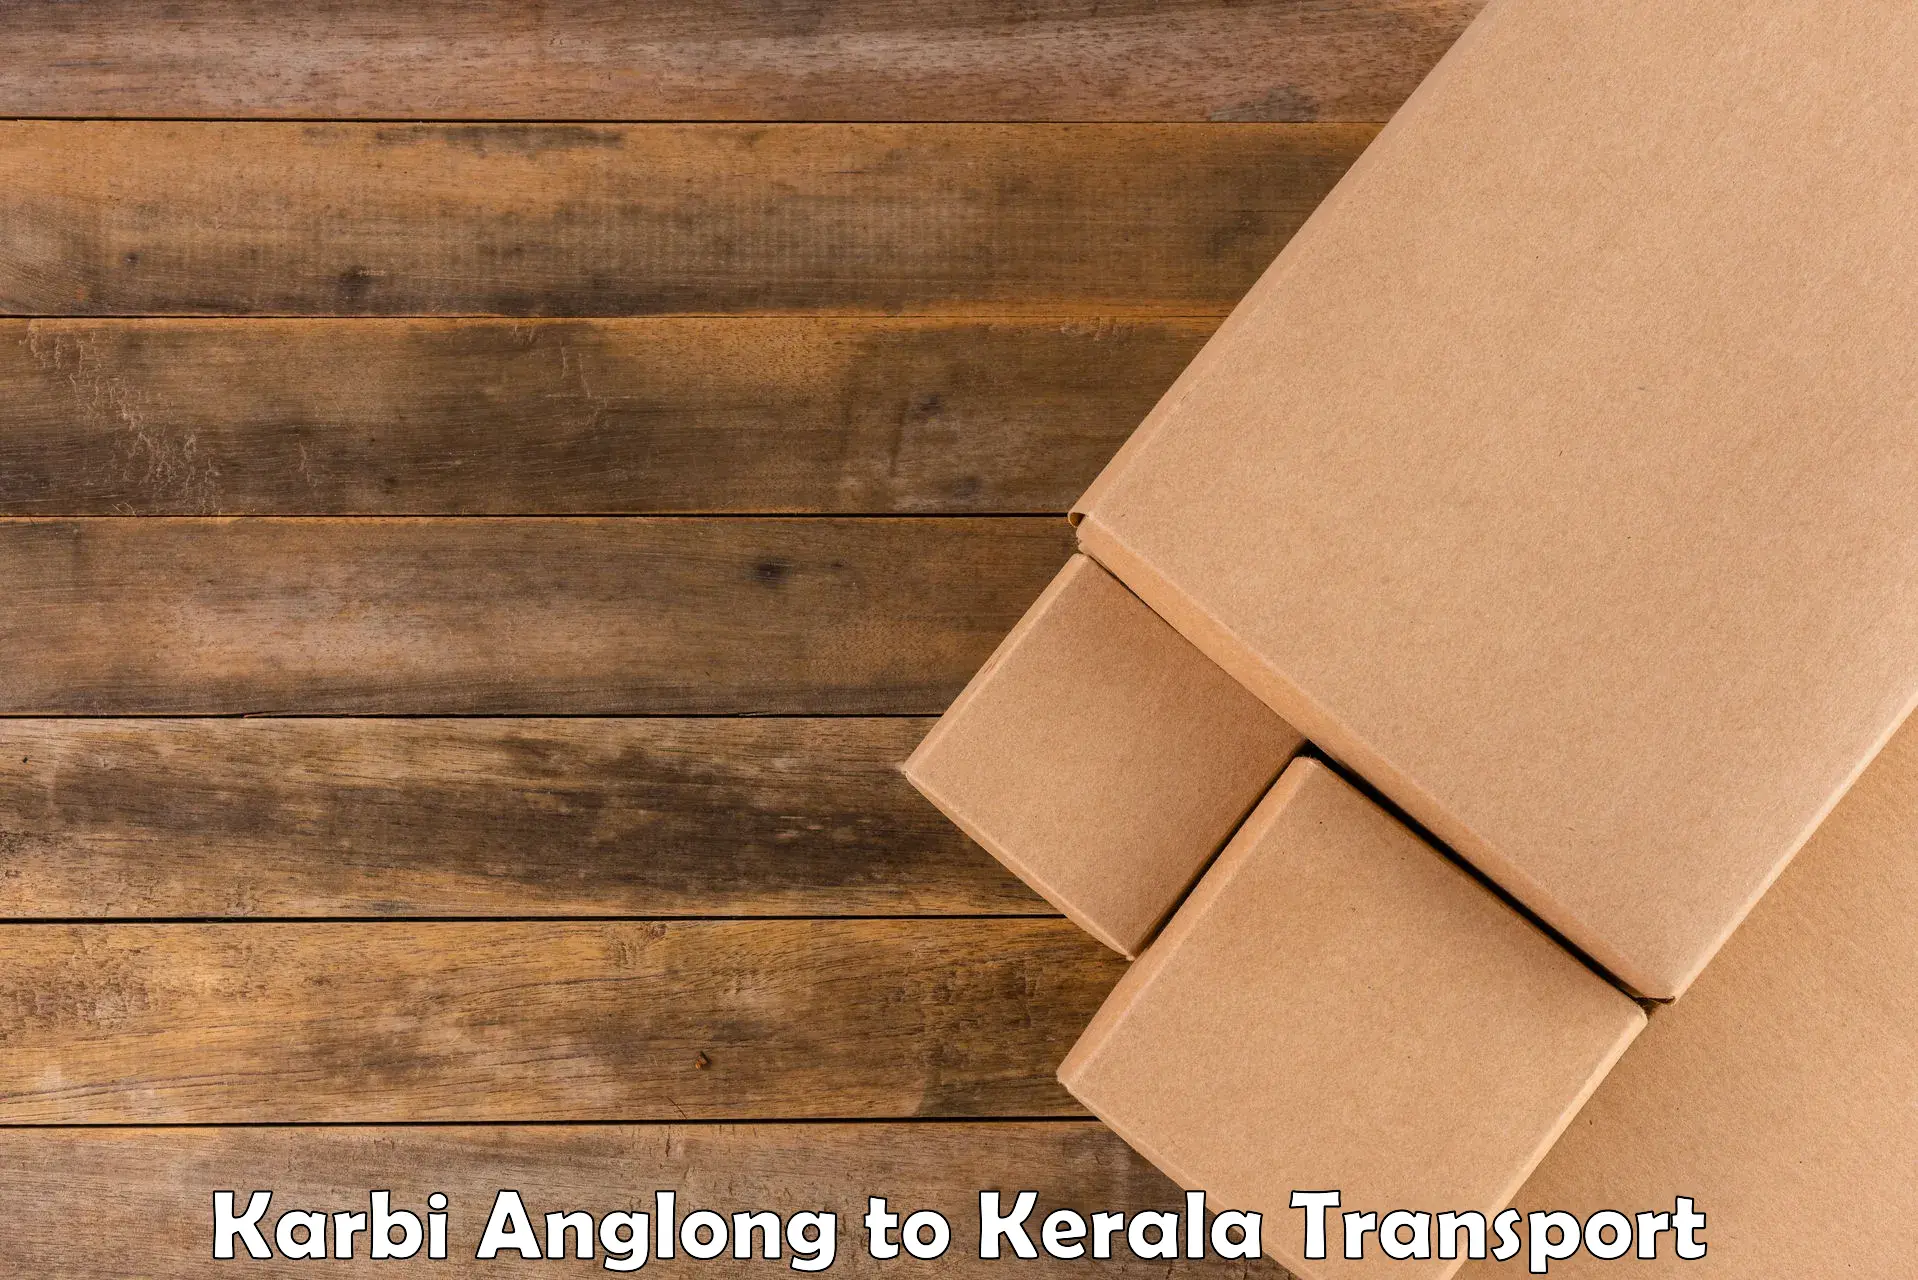 Air cargo transport services Karbi Anglong to Manthuka